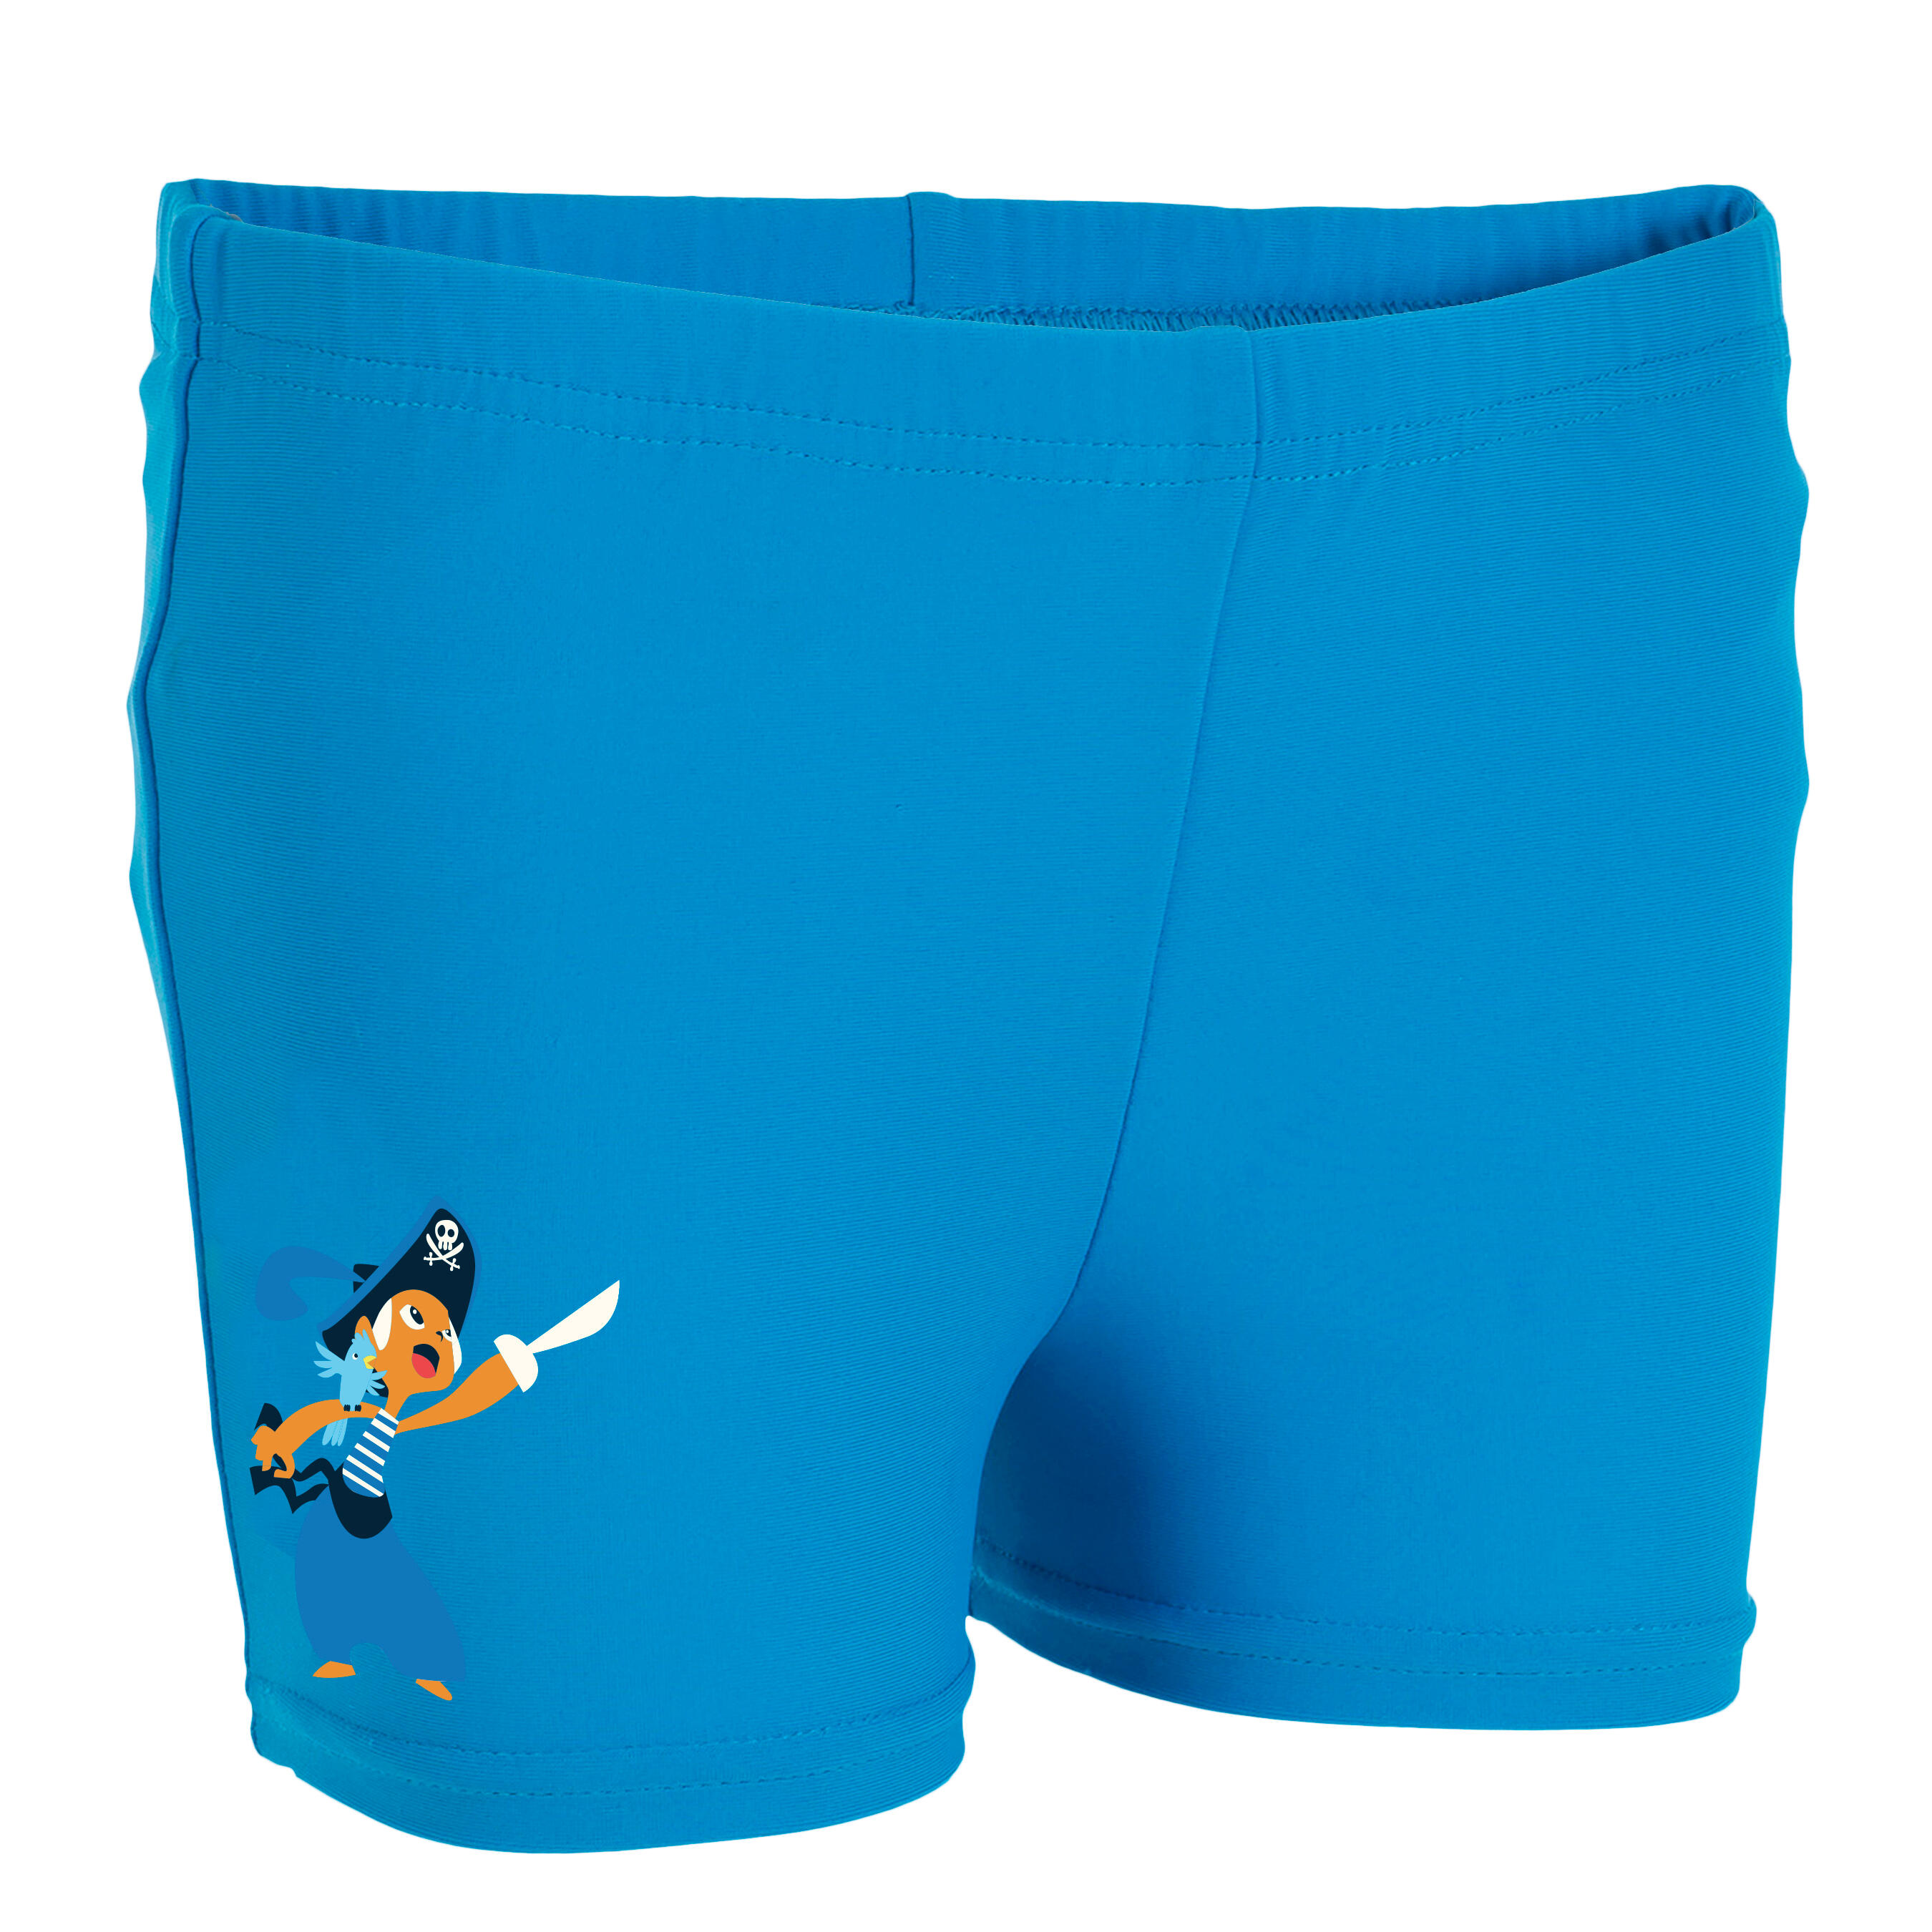 Washable Swim Nappy Shorts - Blue 1/4